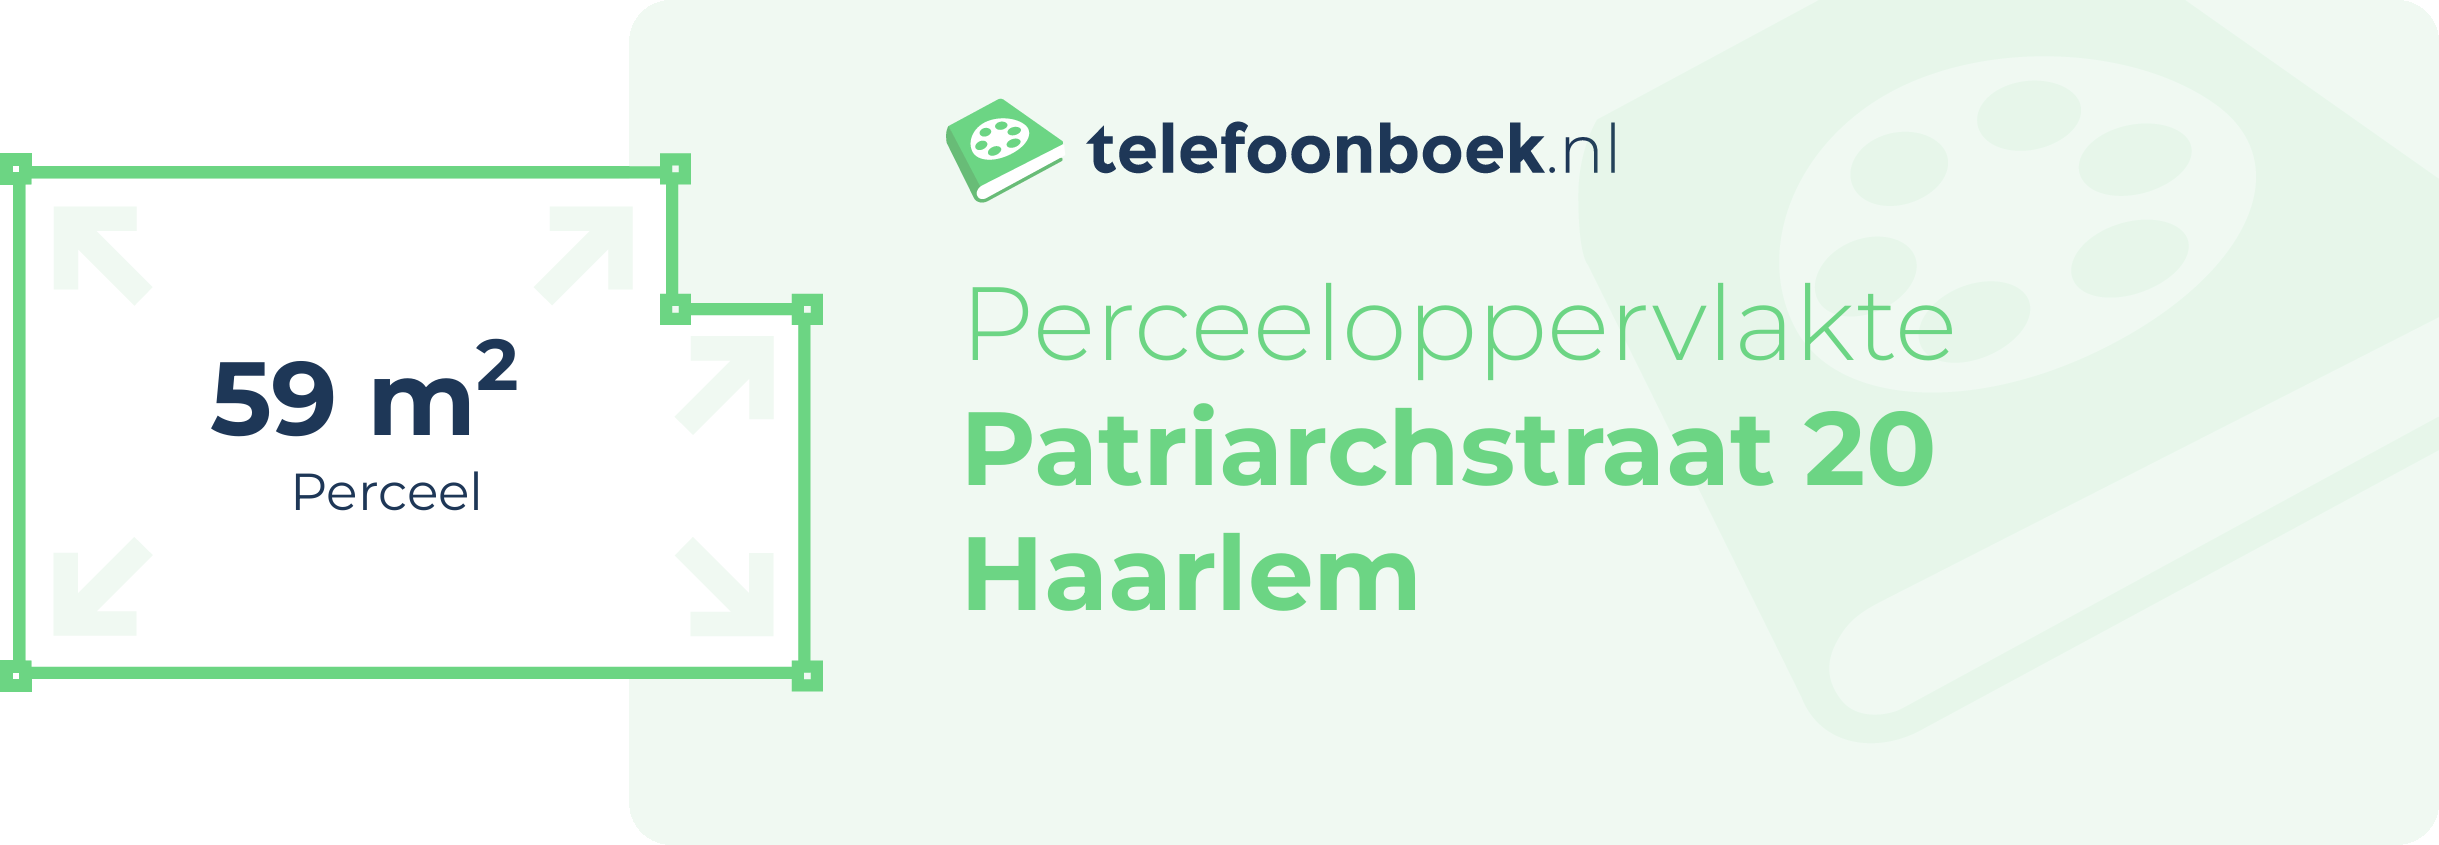 Perceeloppervlakte Patriarchstraat 20 Haarlem